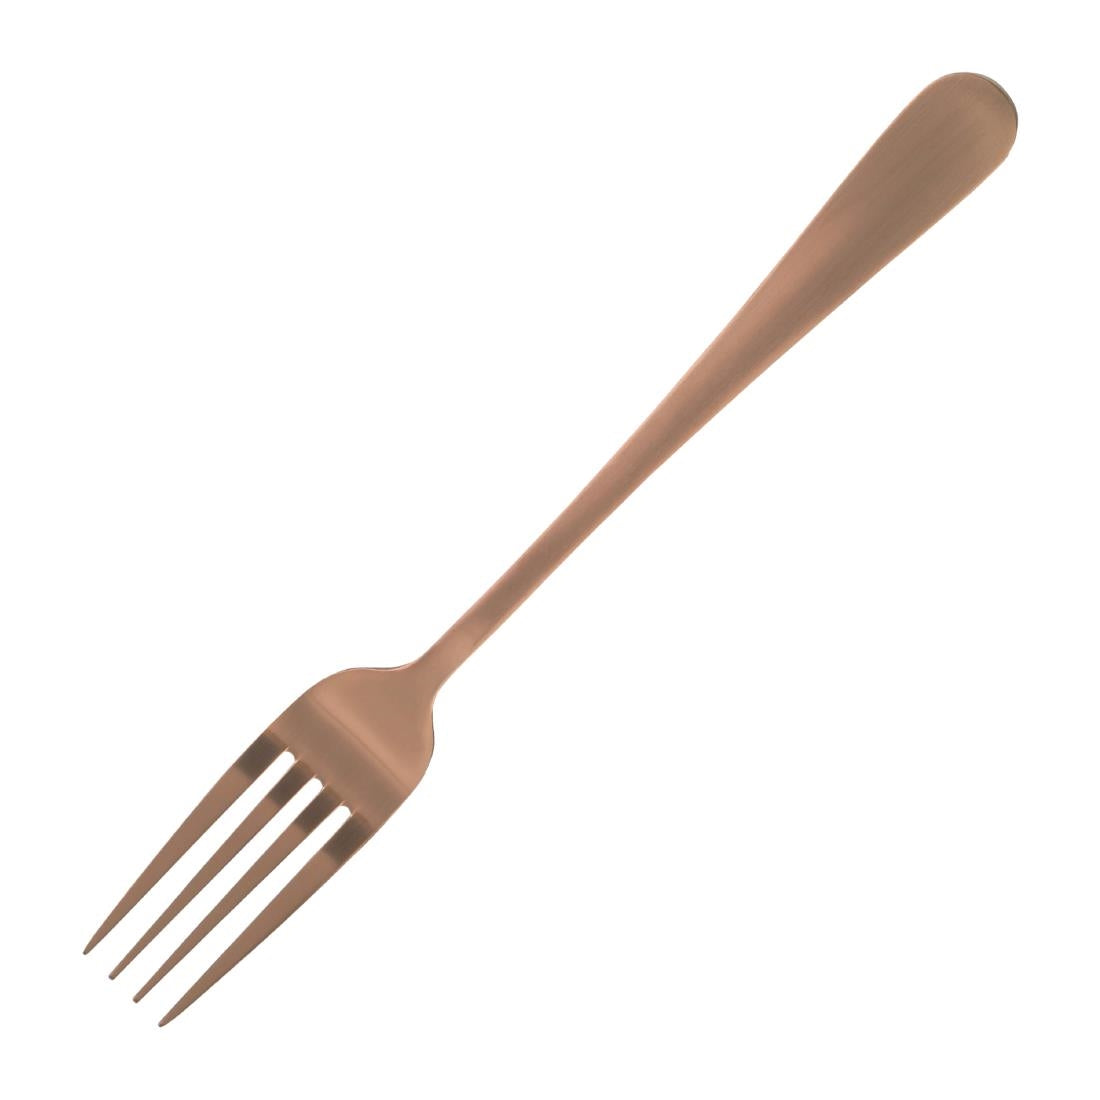 DX631 Amefa Blush Table Fork Copper (Pack of 12)